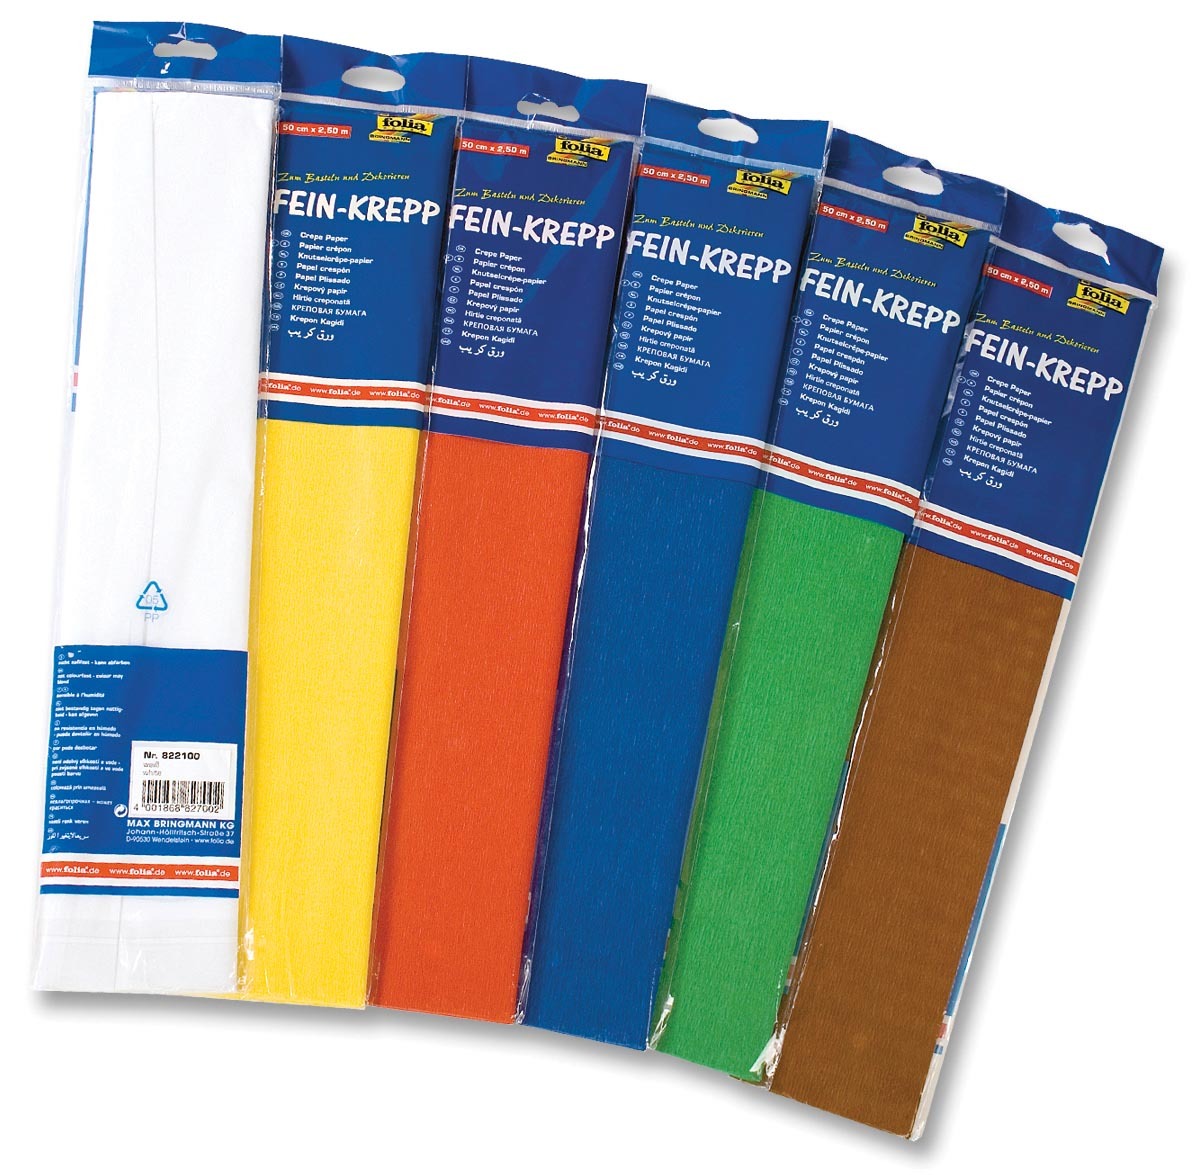 Folia crêpepapier pak van 10 stuks in geassorteerde kleuren: wit, geel, licht oranje, lichtblauw, blau..